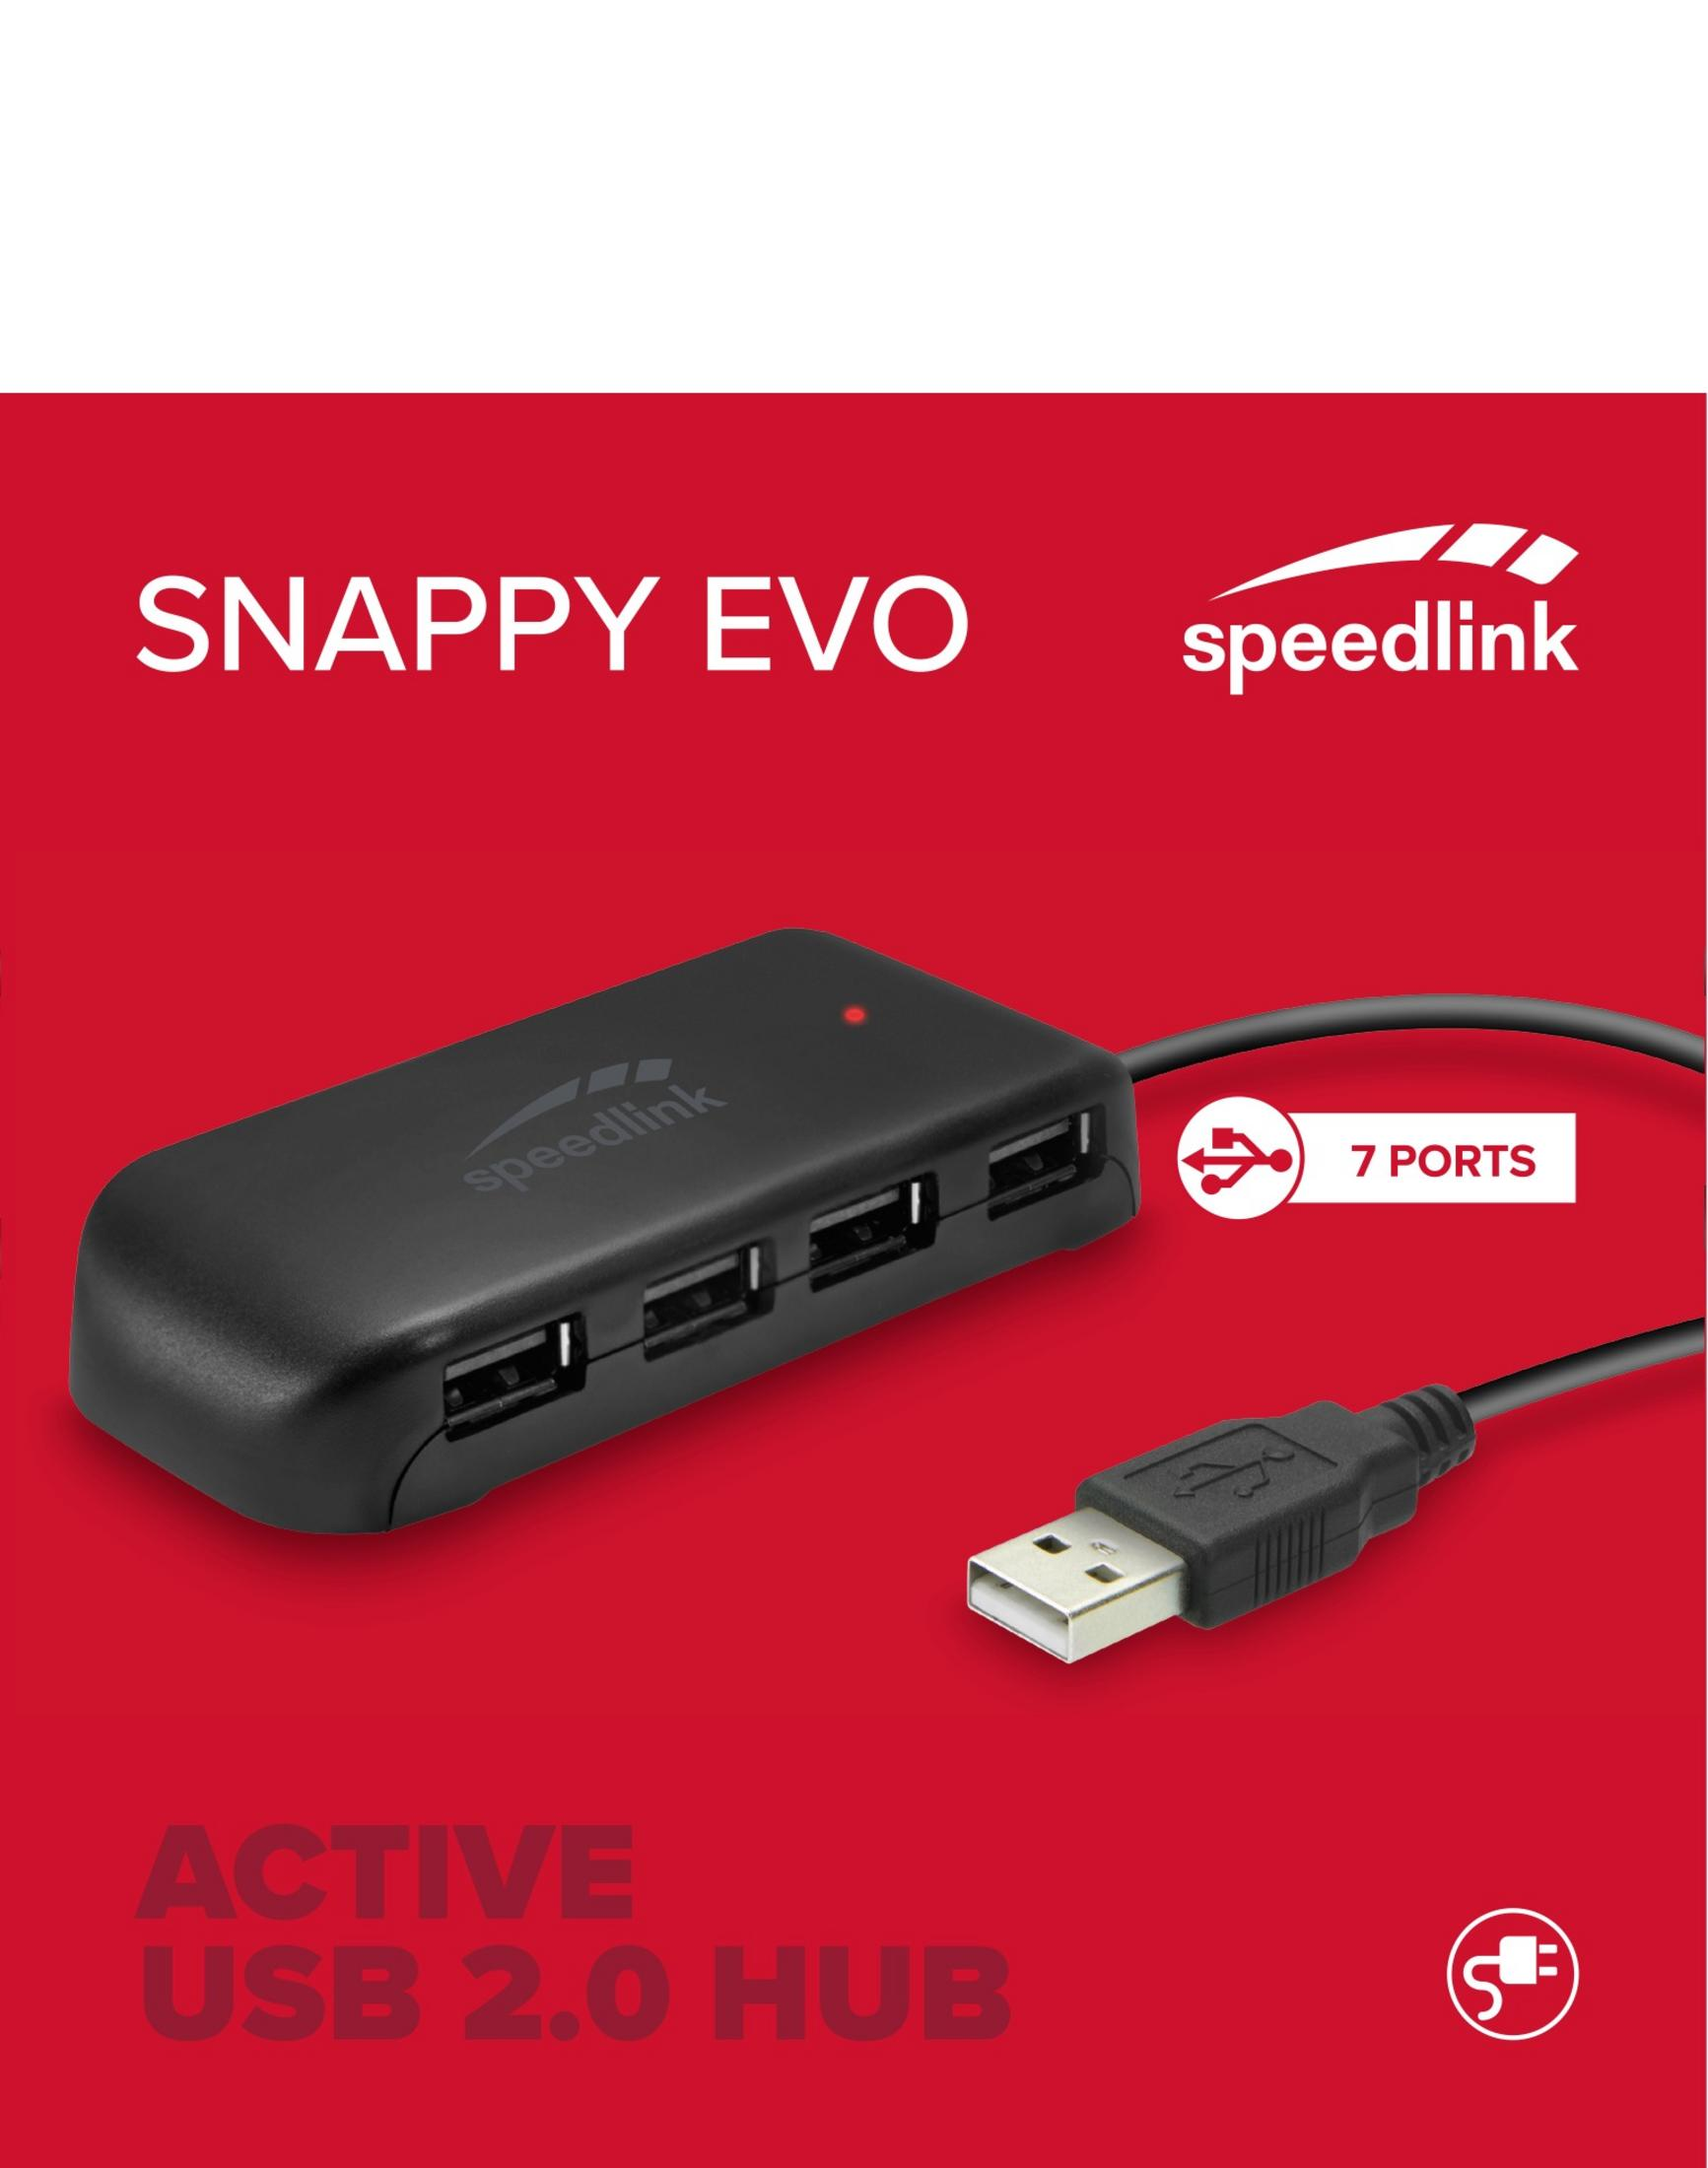 SL-140005-BK 7-PORT Schwarz USB SPEEDLINK Hub, SNAPPY USB EVO USB HUB 2.0,